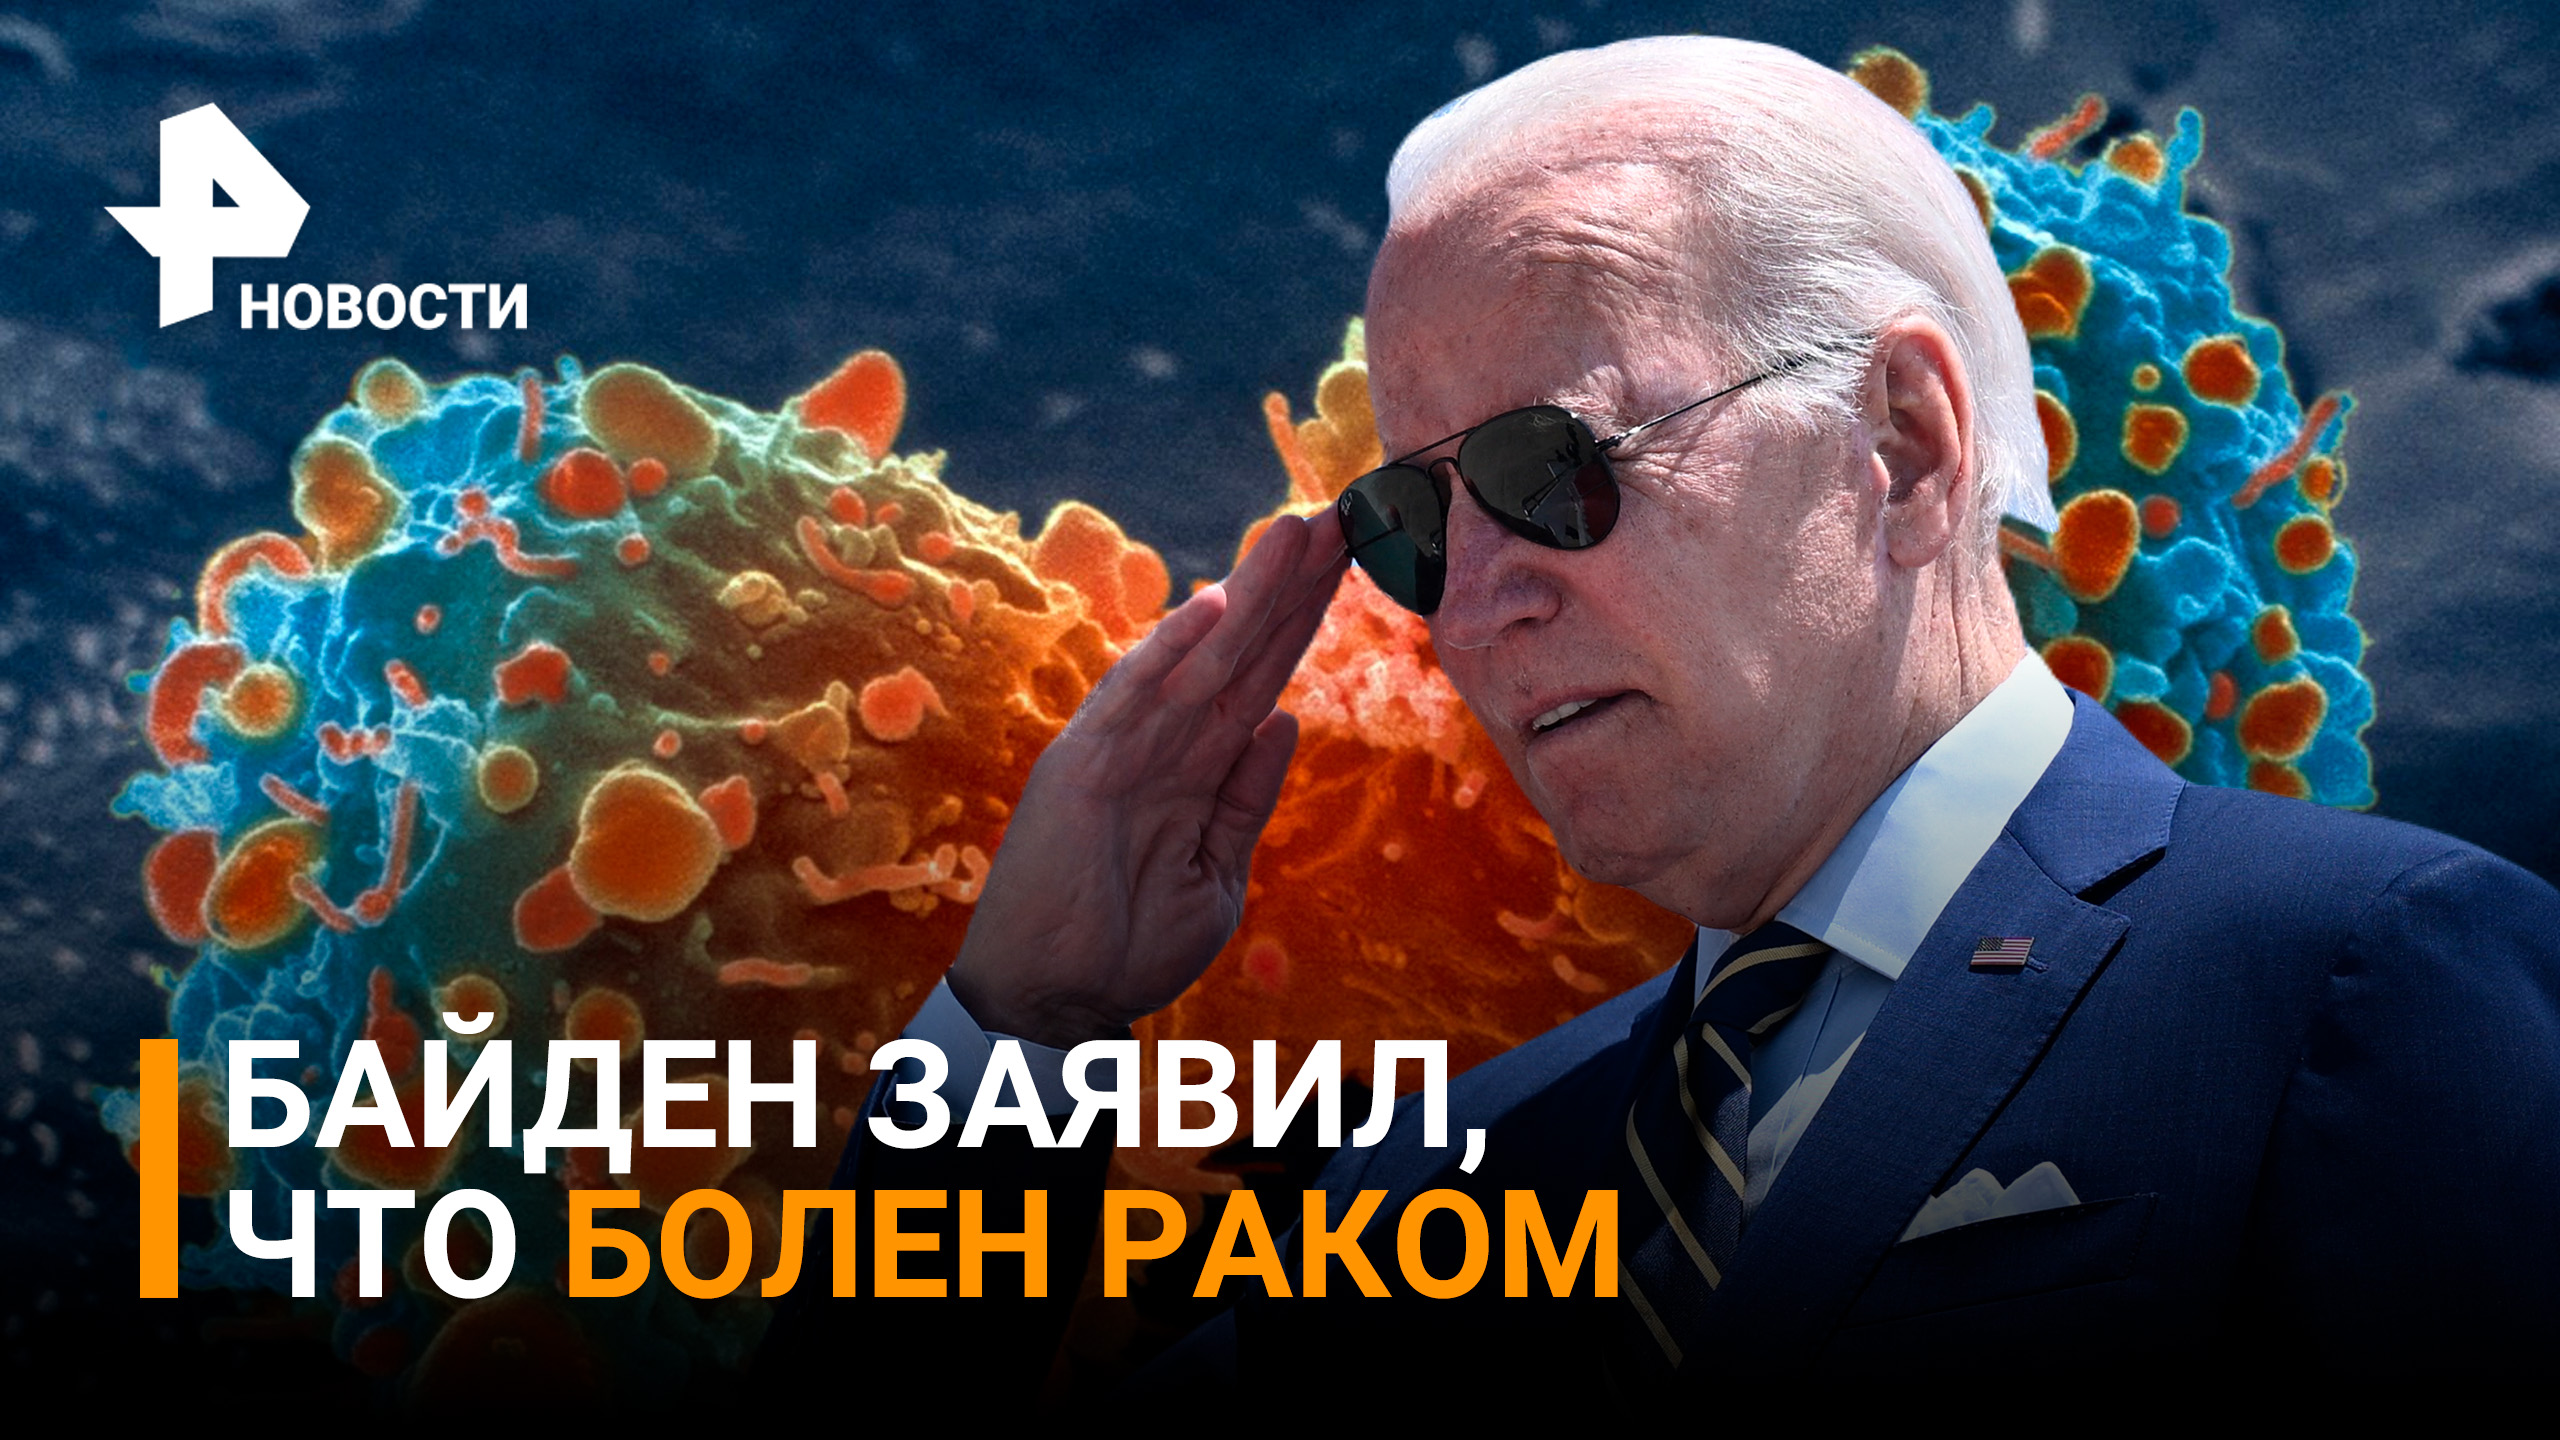 Байден заявил, что болен раком из-за загрязнения окружающей среды / РЕН Новости